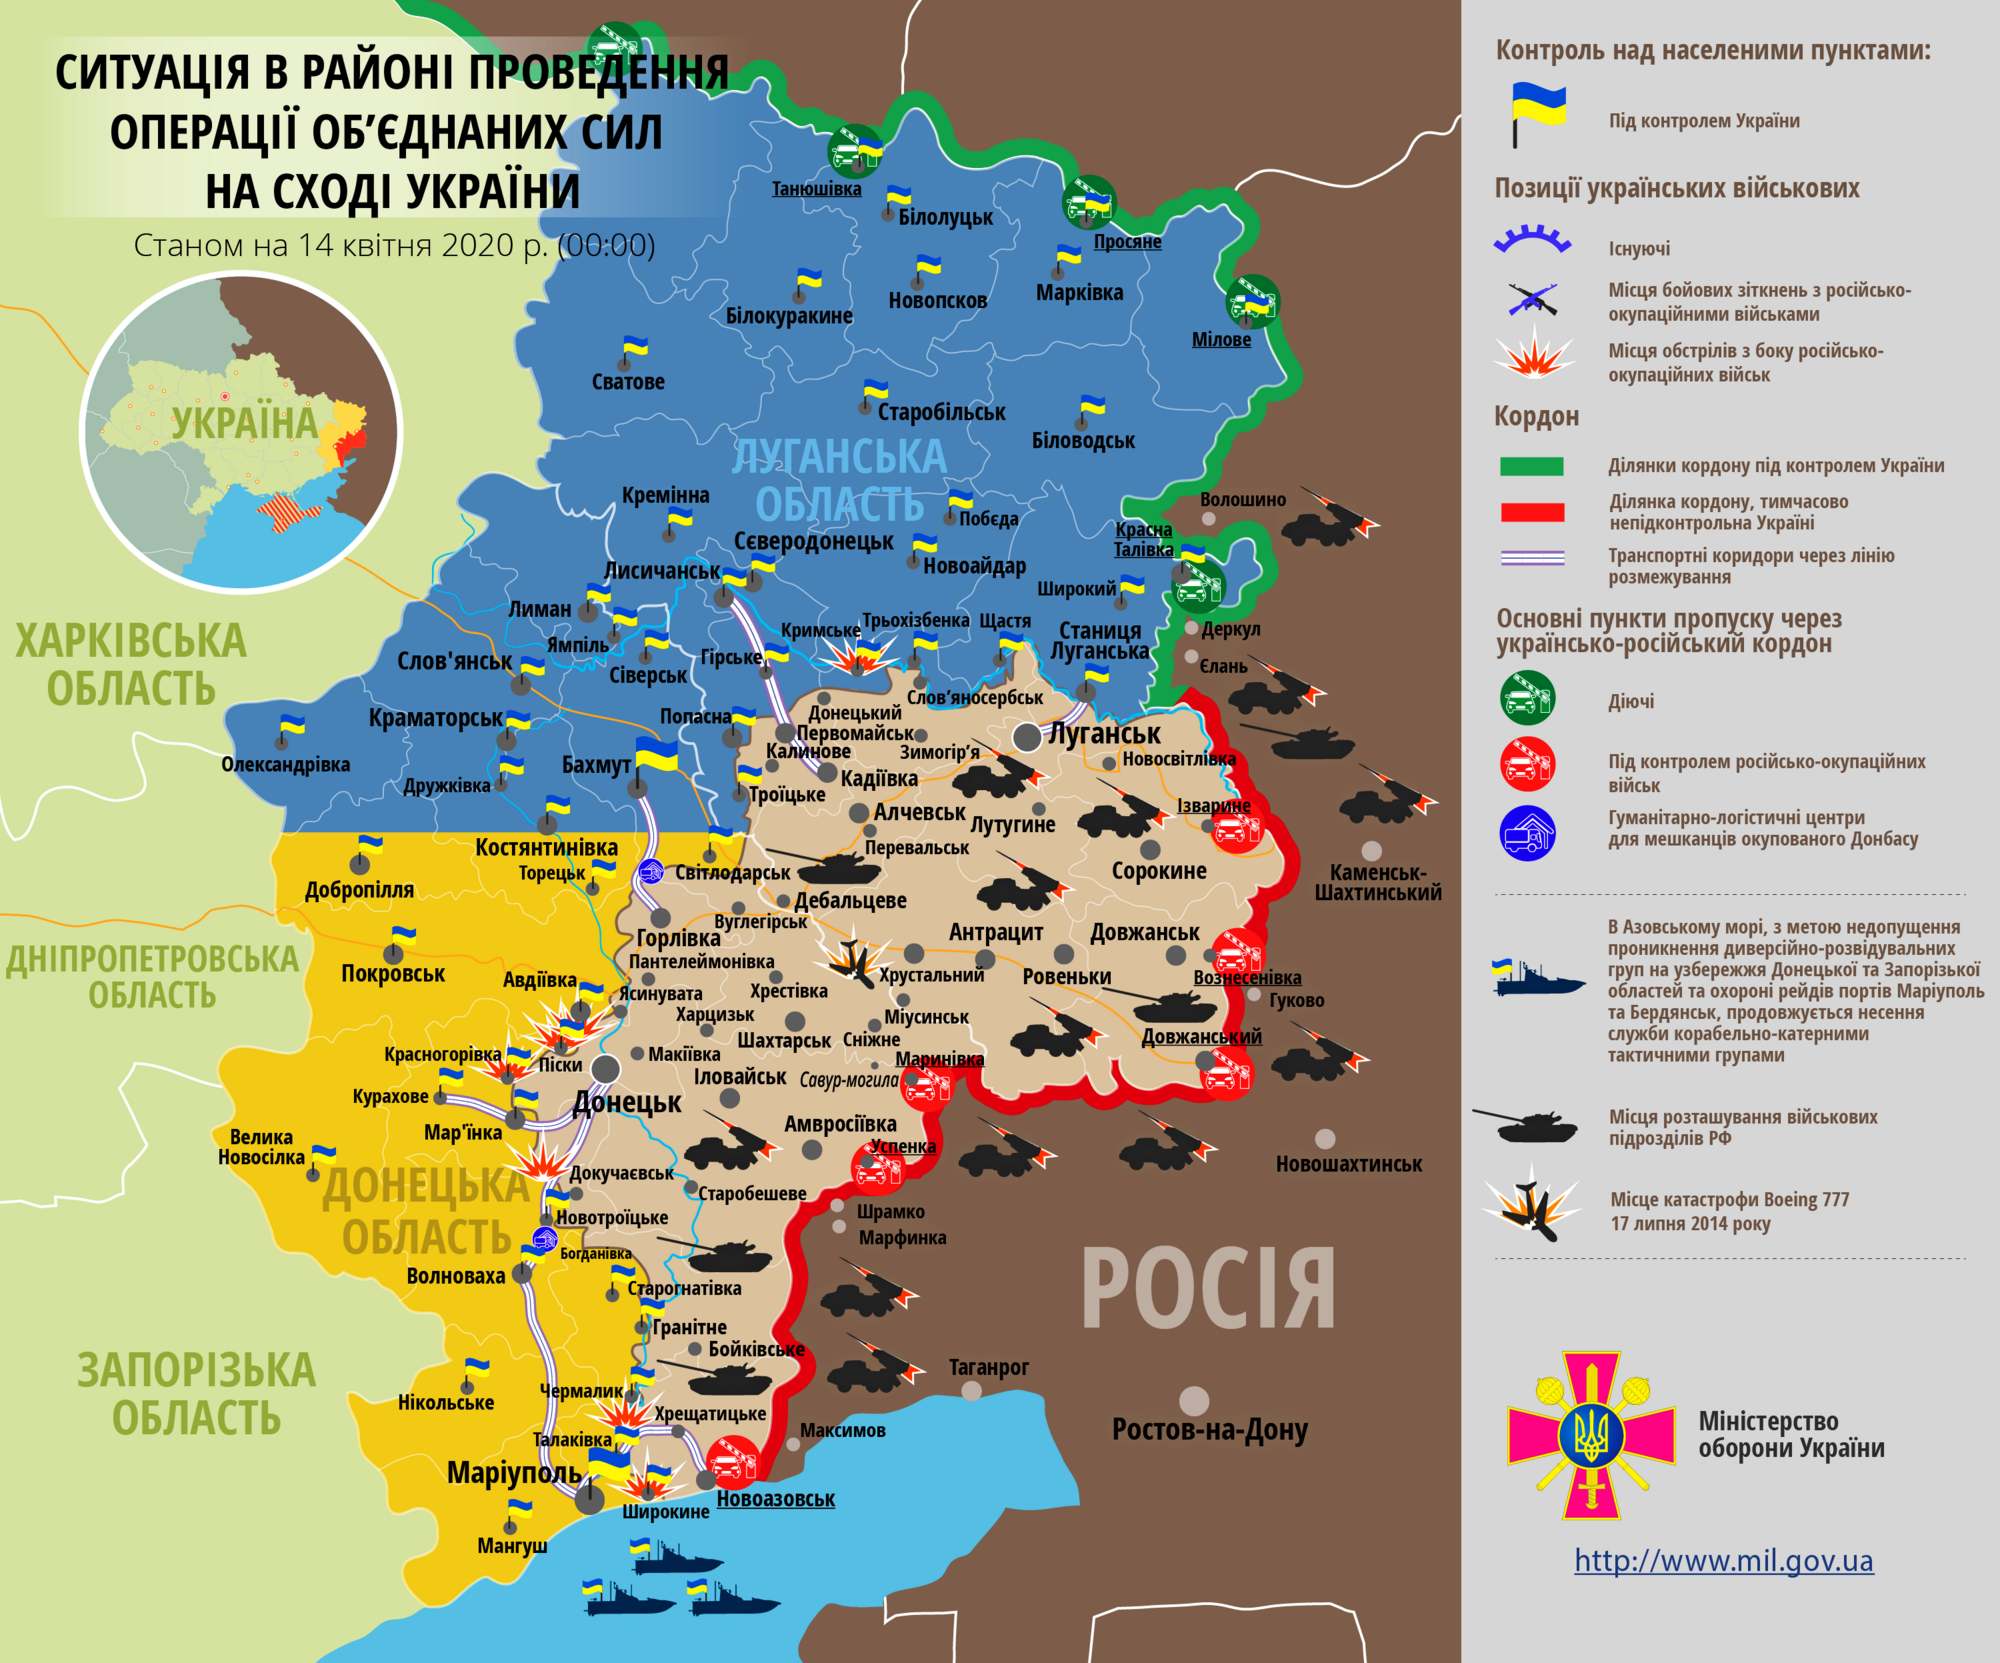 Ситуация в зоне проведения ООС на Донбассе 14 апреля